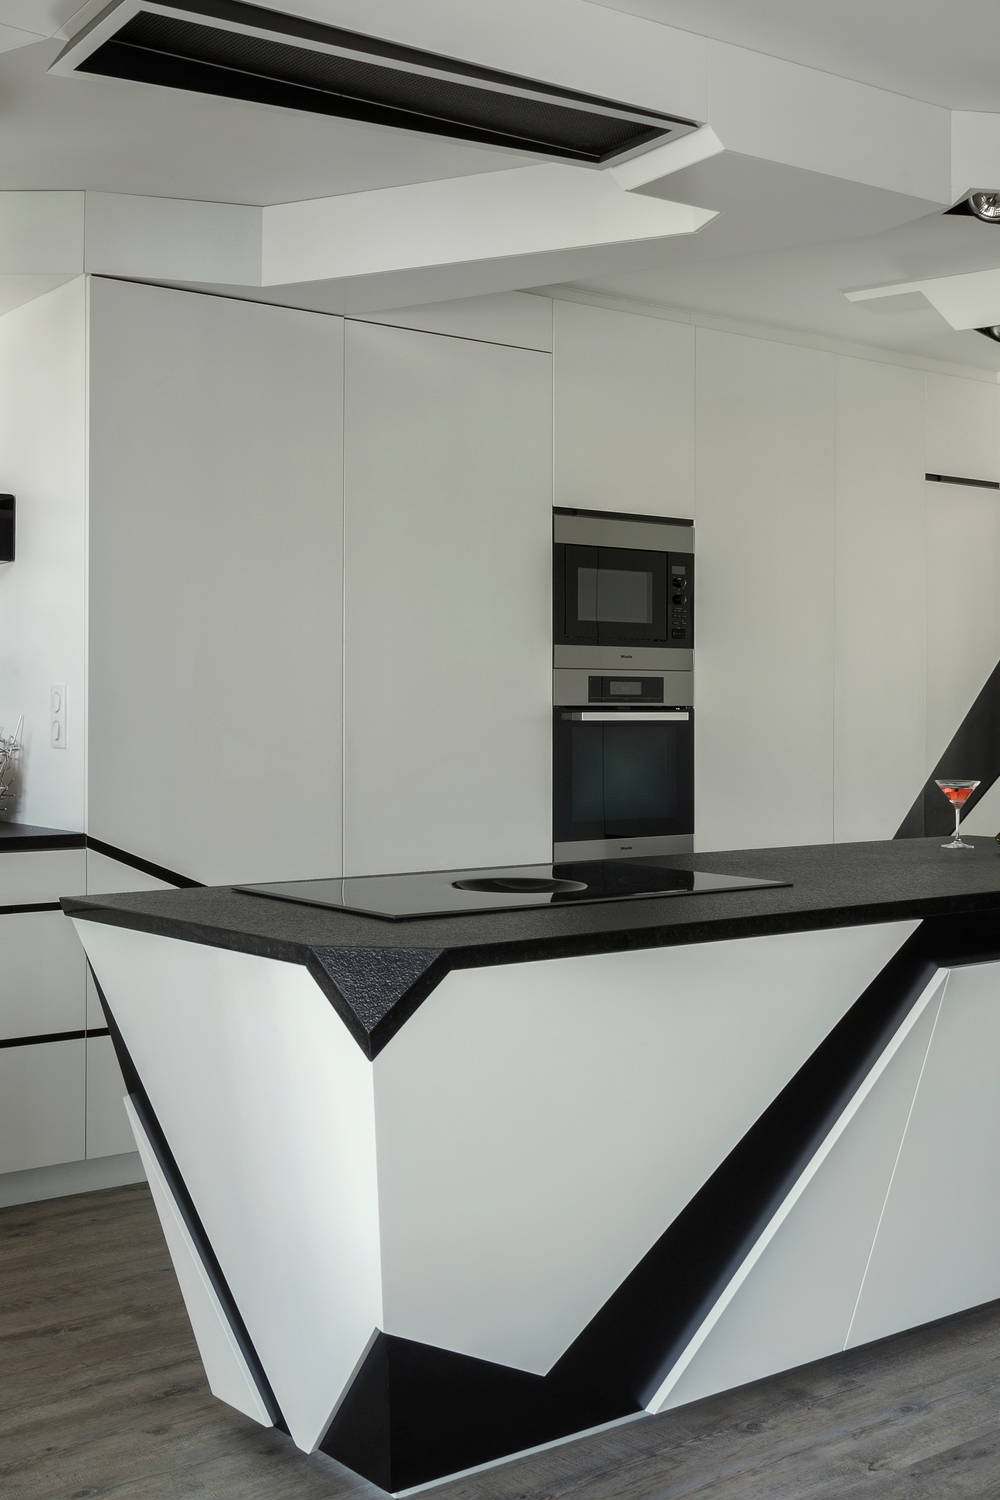 Futuristic Kitchen Designs Space Materials Future Island